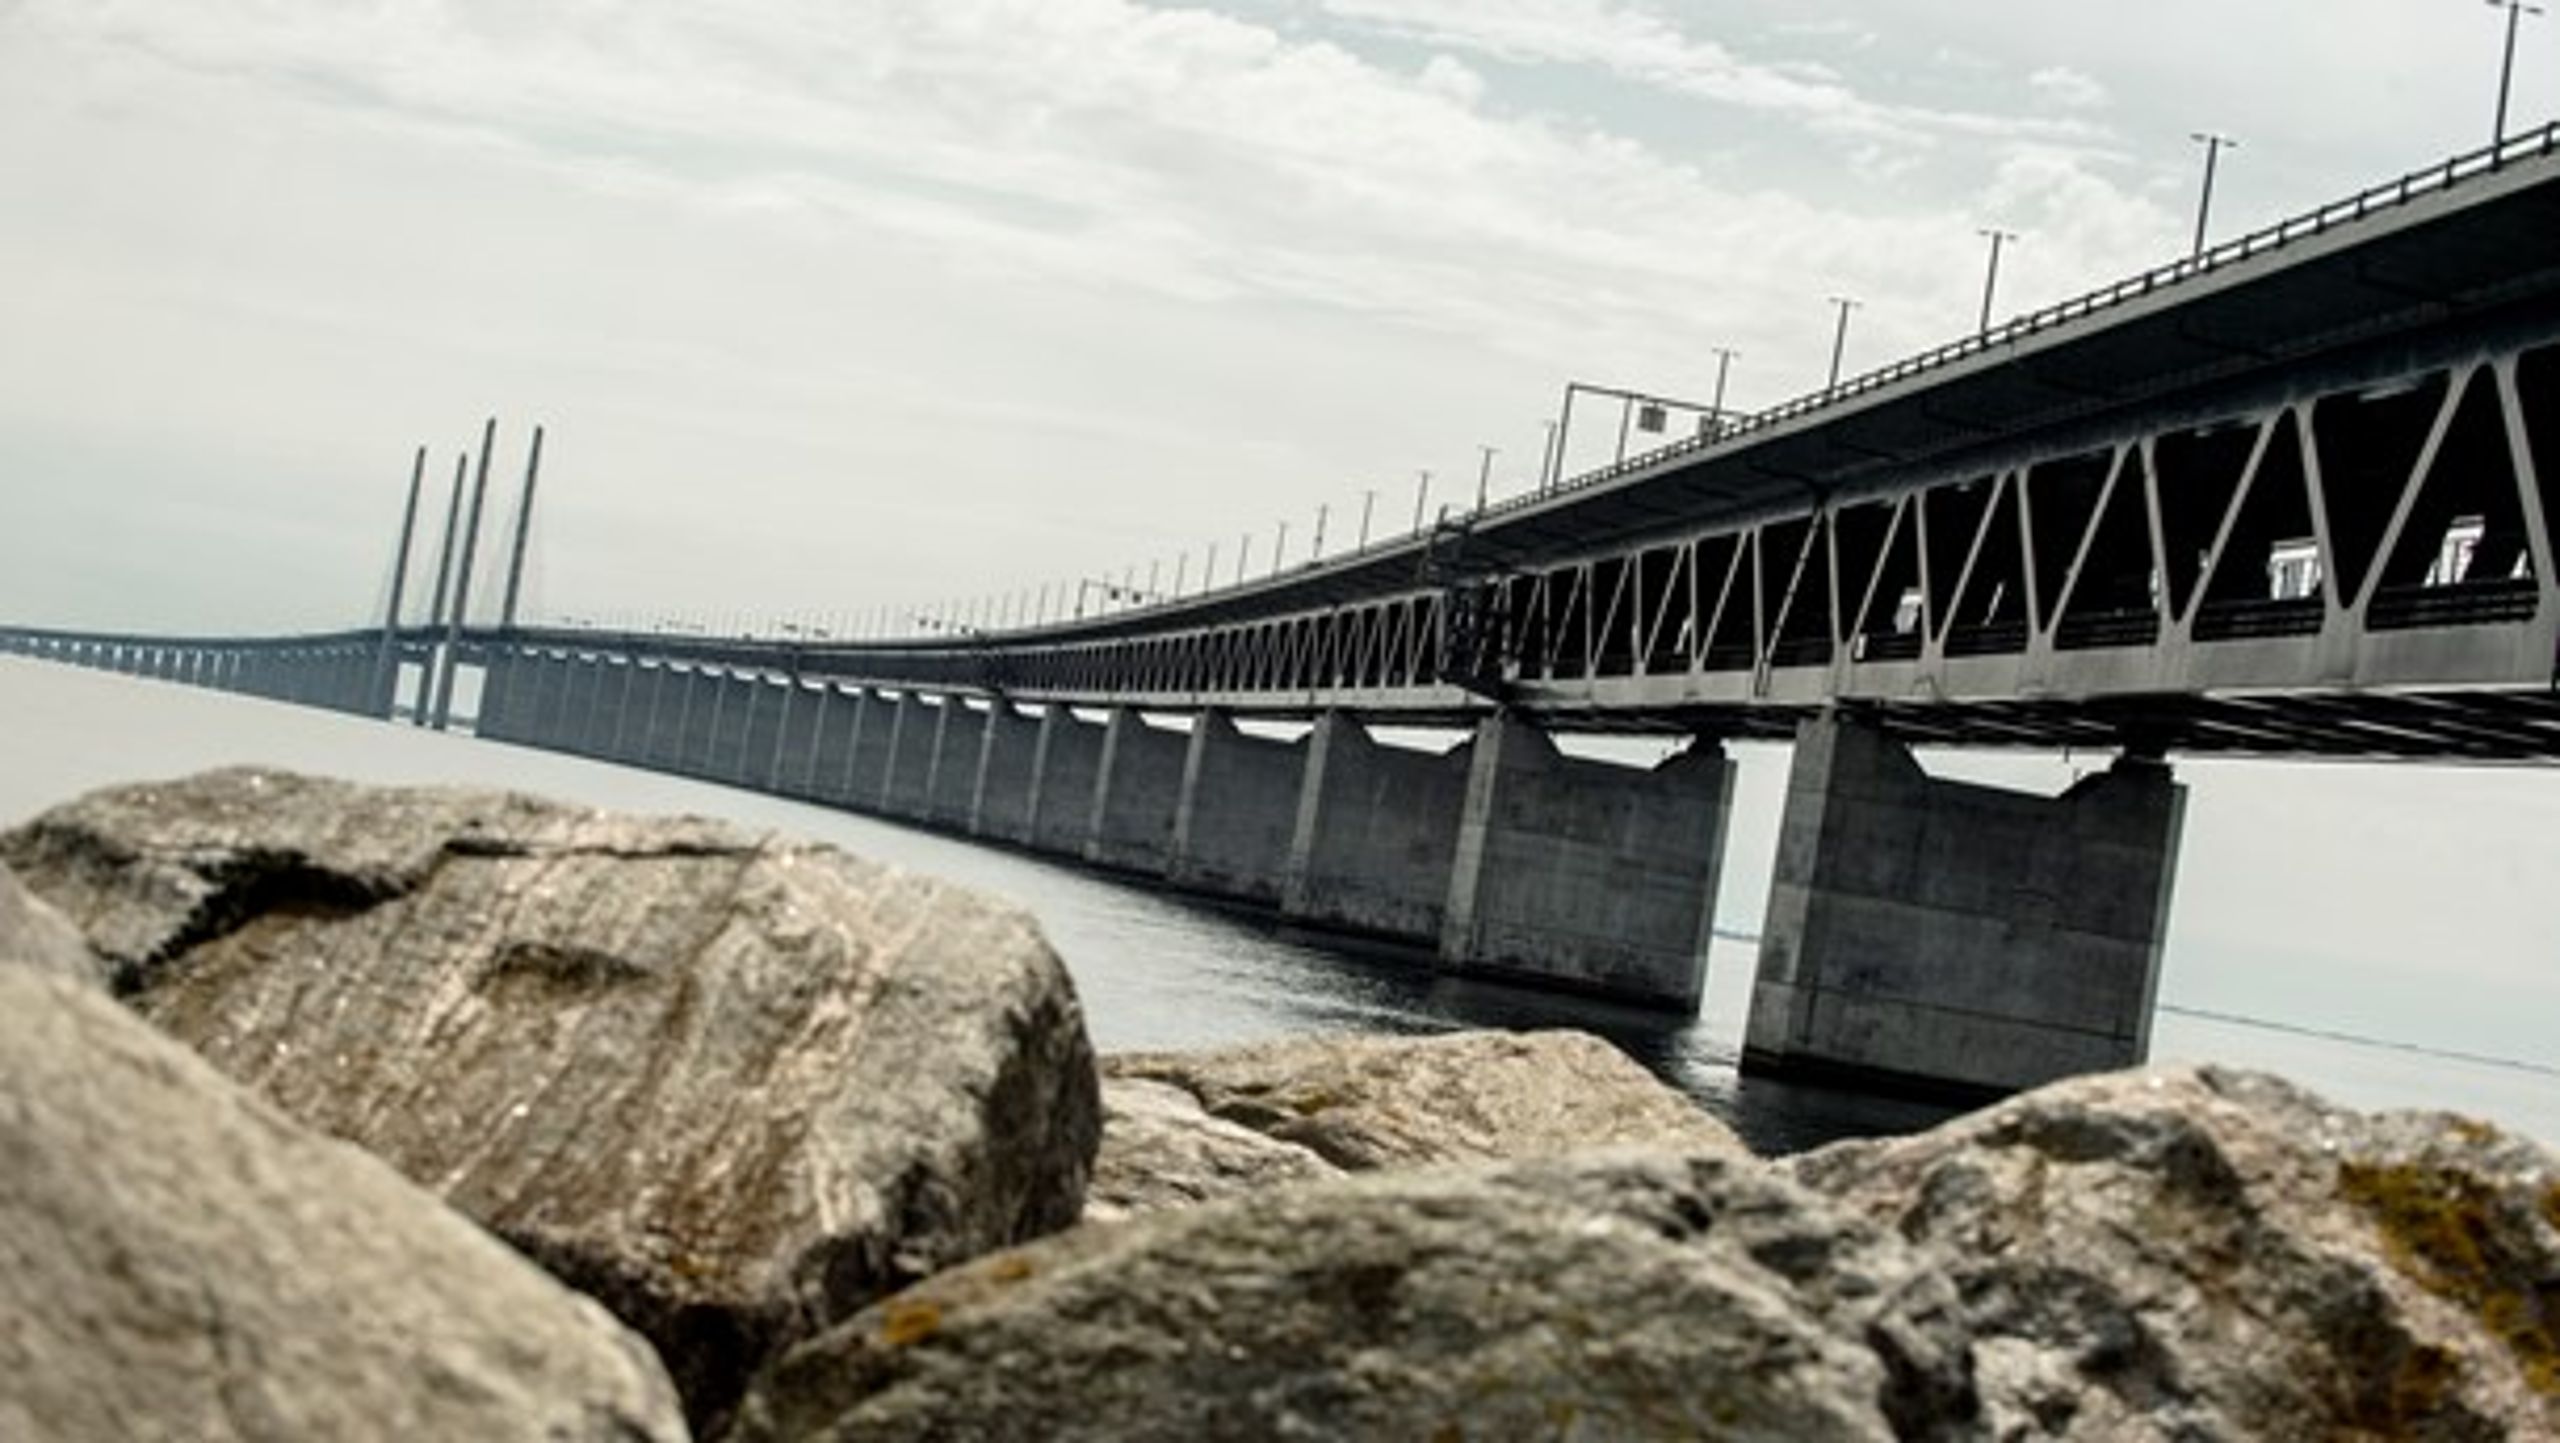 Der er brug for aflastning af Øresundsbroen, og det vil en fast forbindelse mellem Helsingør og Helsingborg kunne hjælpe med, skriver Henrik Fritzon.